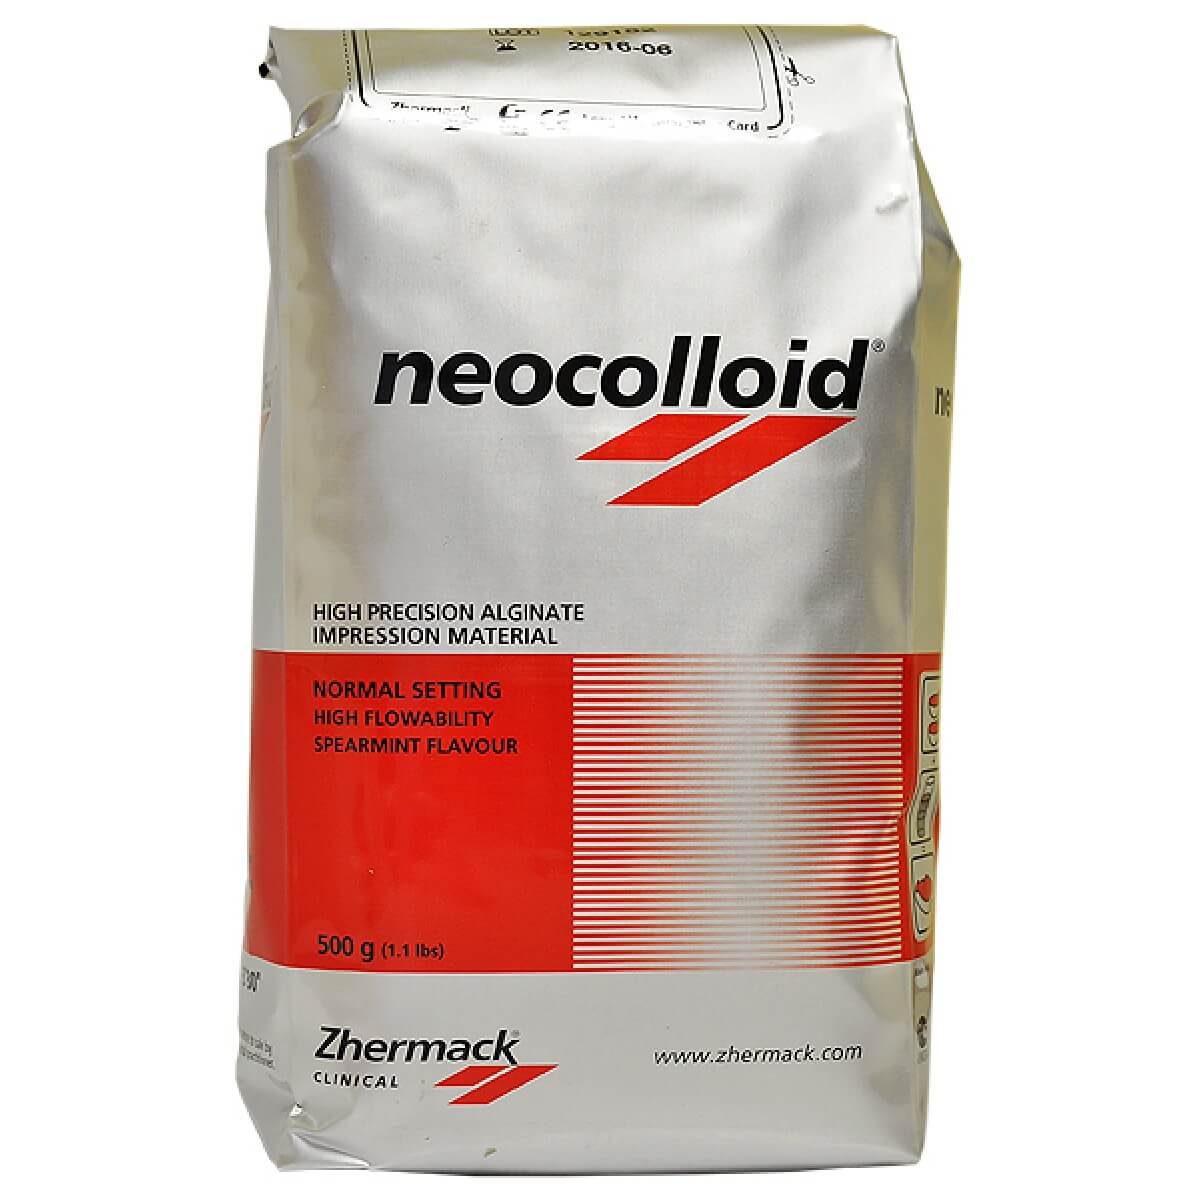 NEOCOLLOID (Неоколлоид) 500 г - альгинат высокой точности для бюгелей , Zhermack